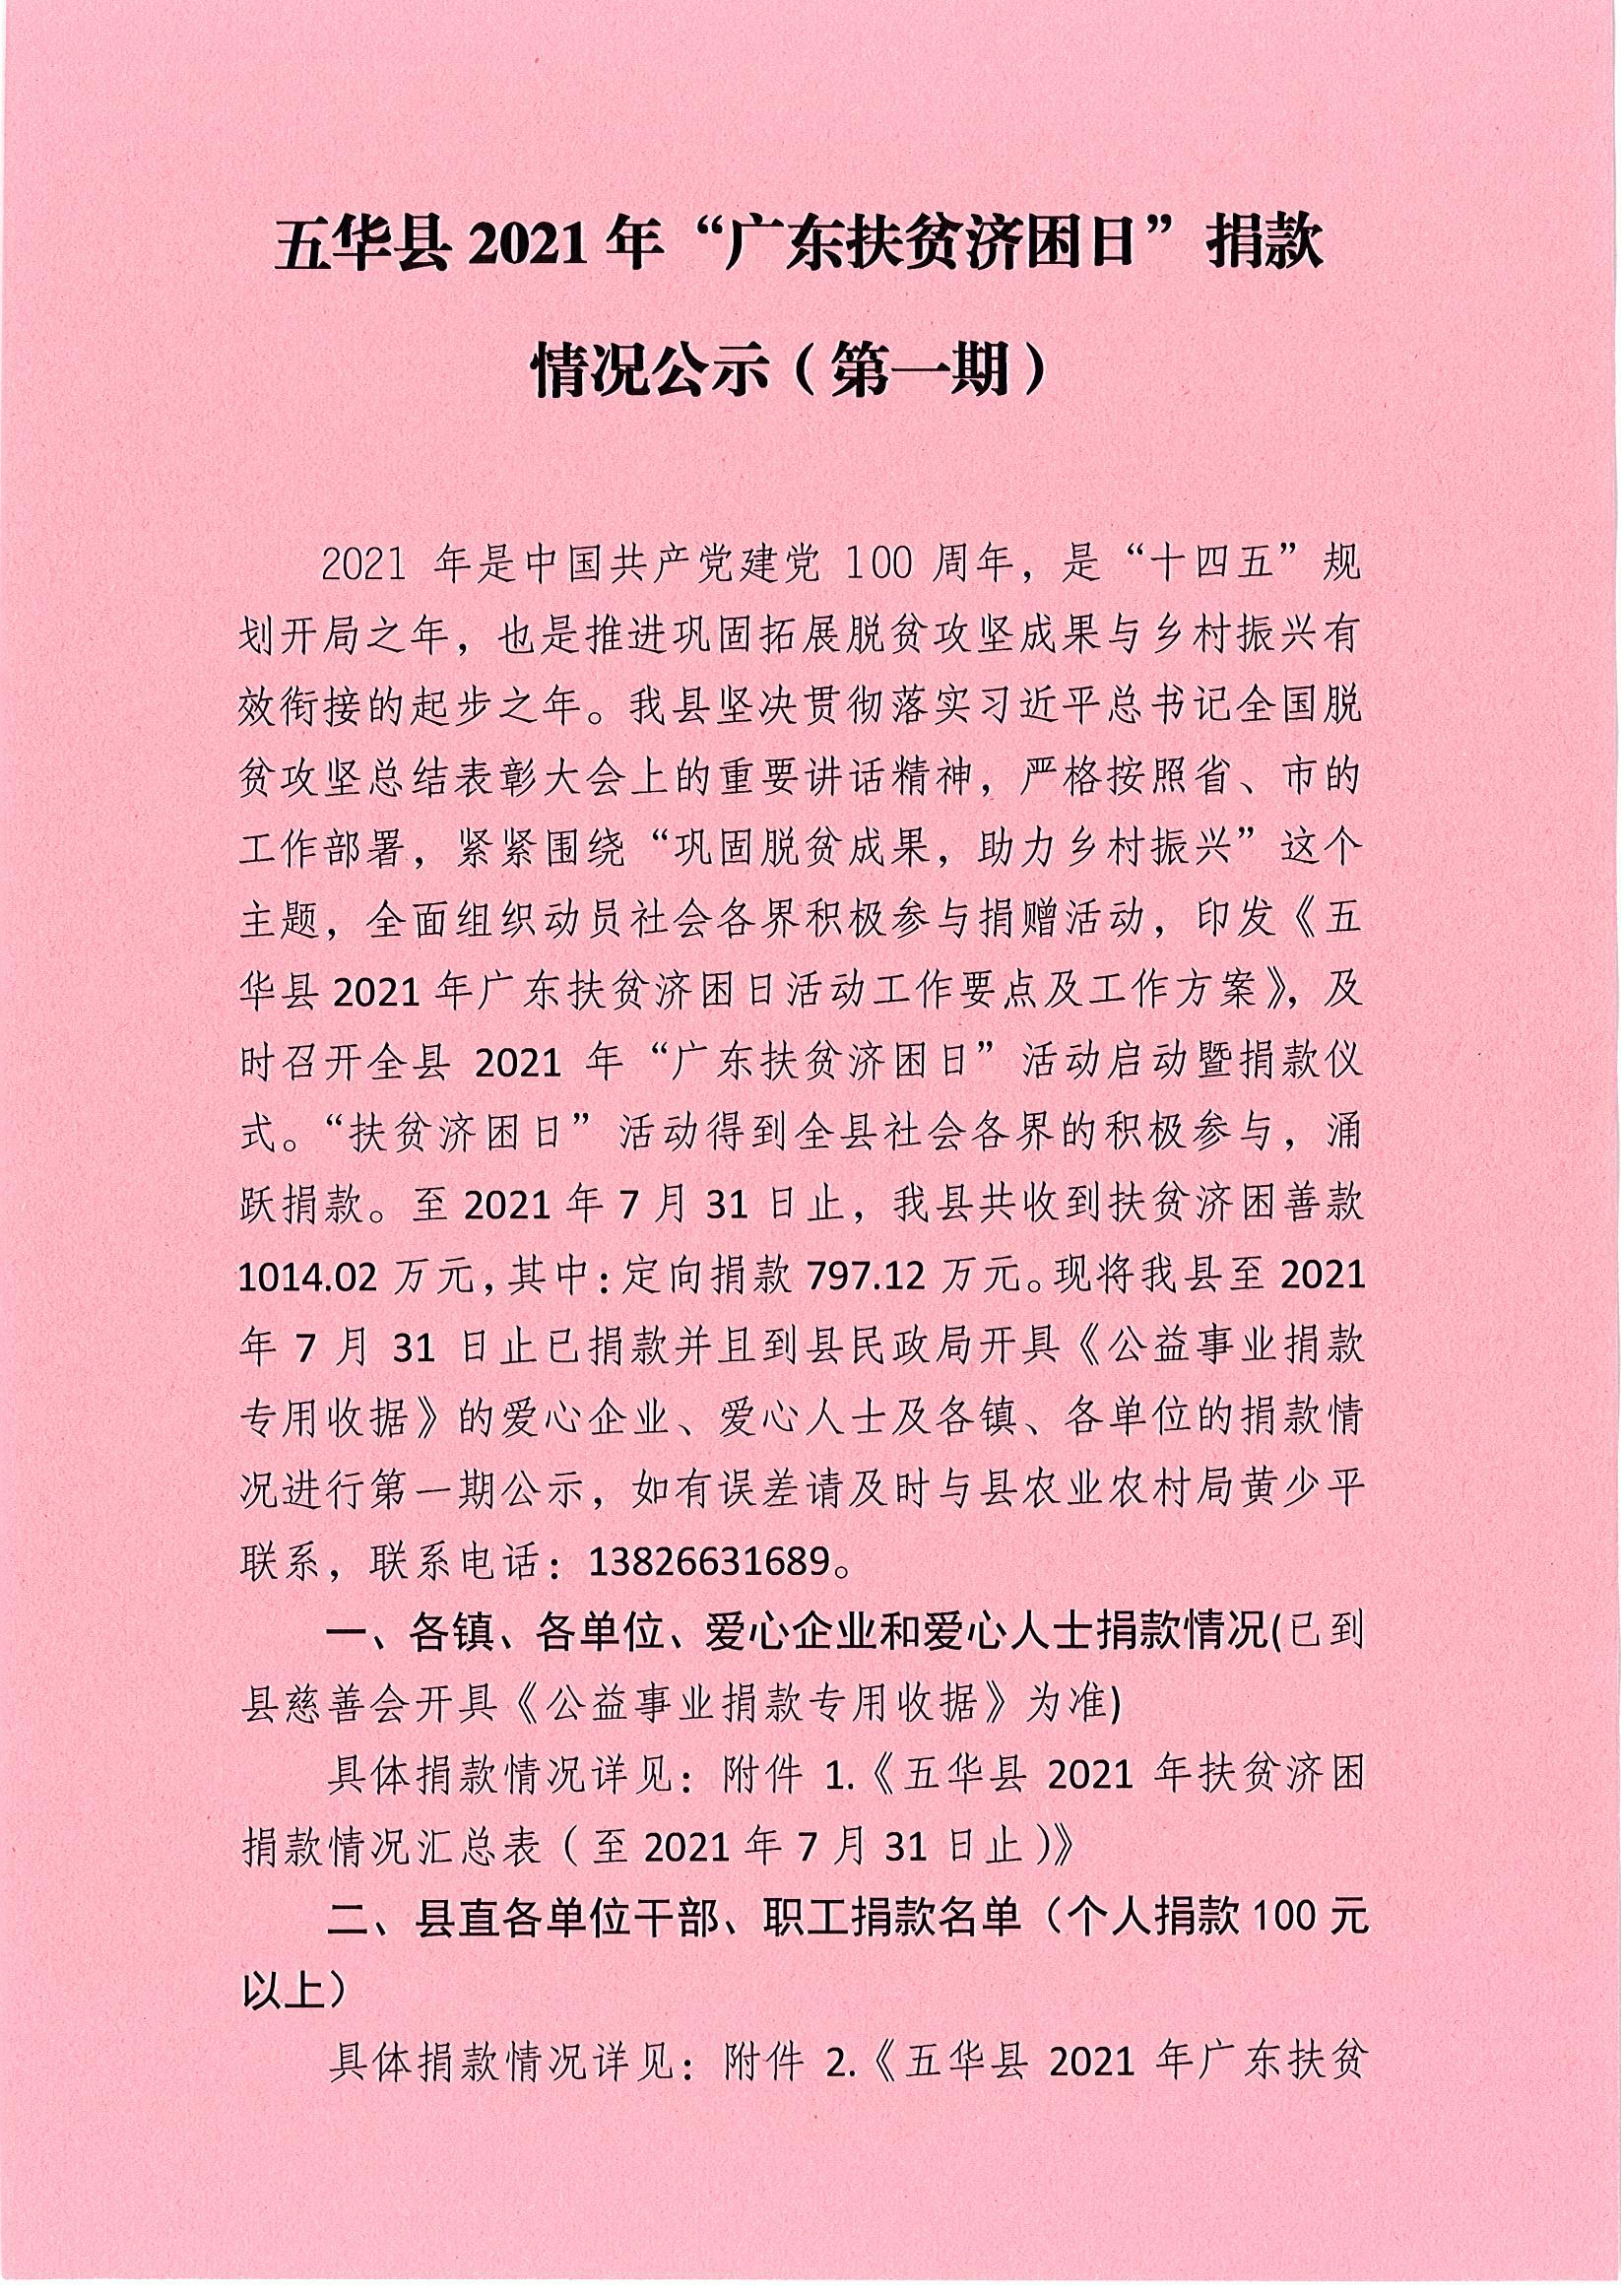 五华县2021年“广东扶贫济困日”捐款情况公示（第一期）.jpg